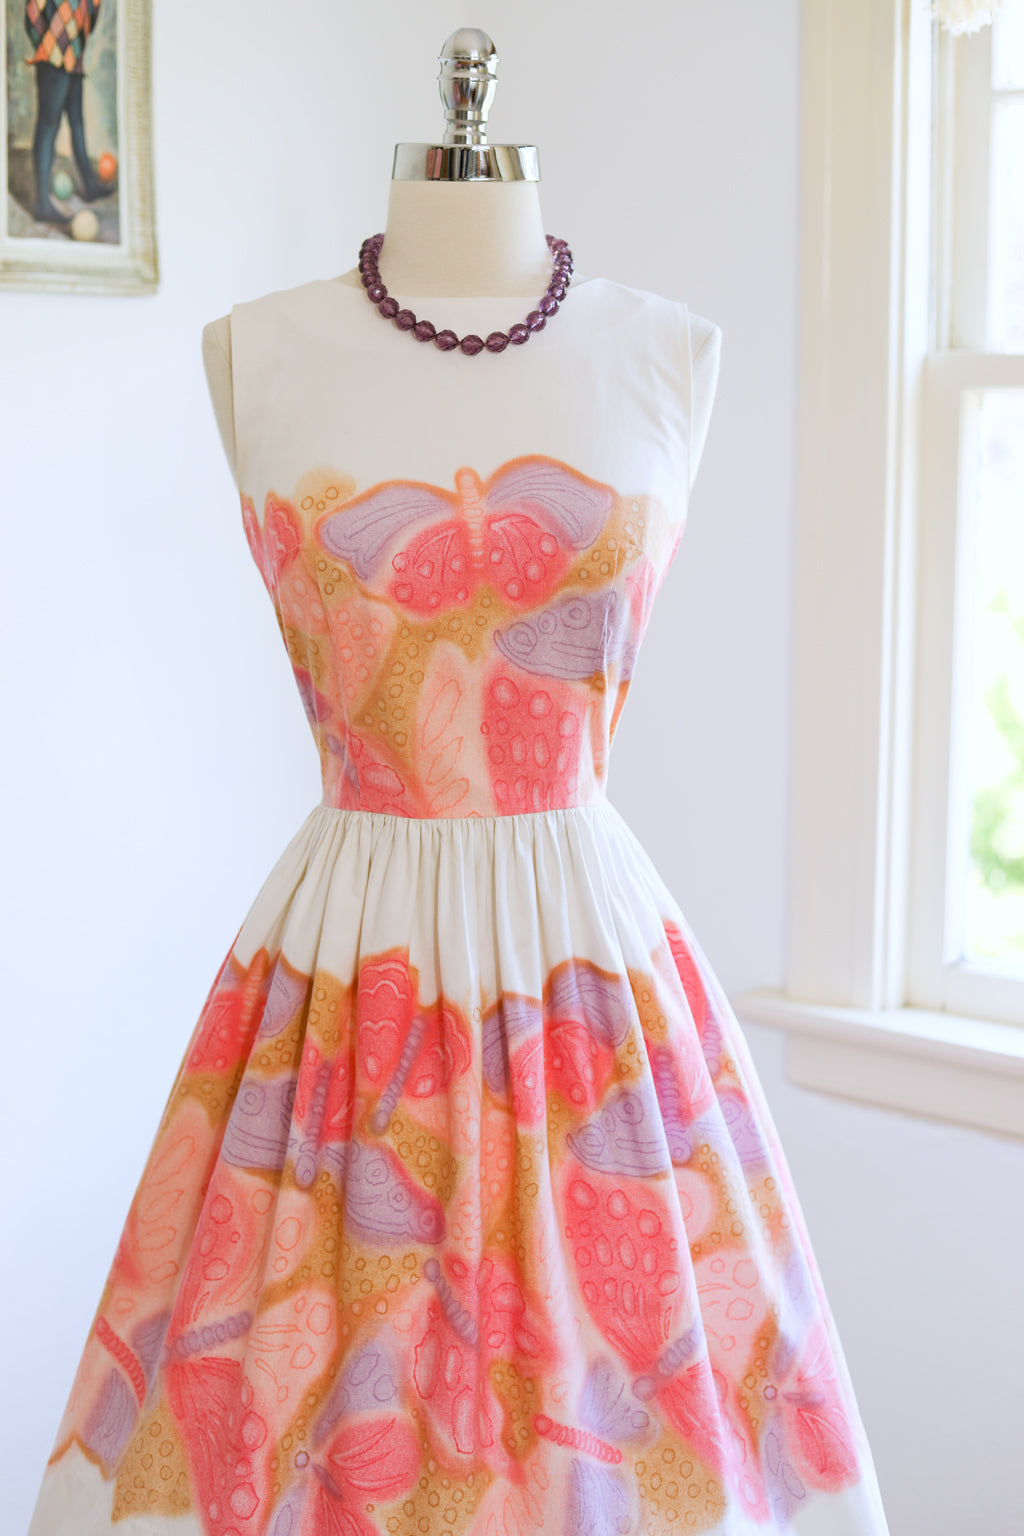 Vintage 1950s to 1960s Dress - Dreamy Unicorn Pastels Big Butterfly Novelty Border Print Cotton Sundress Size XS to S